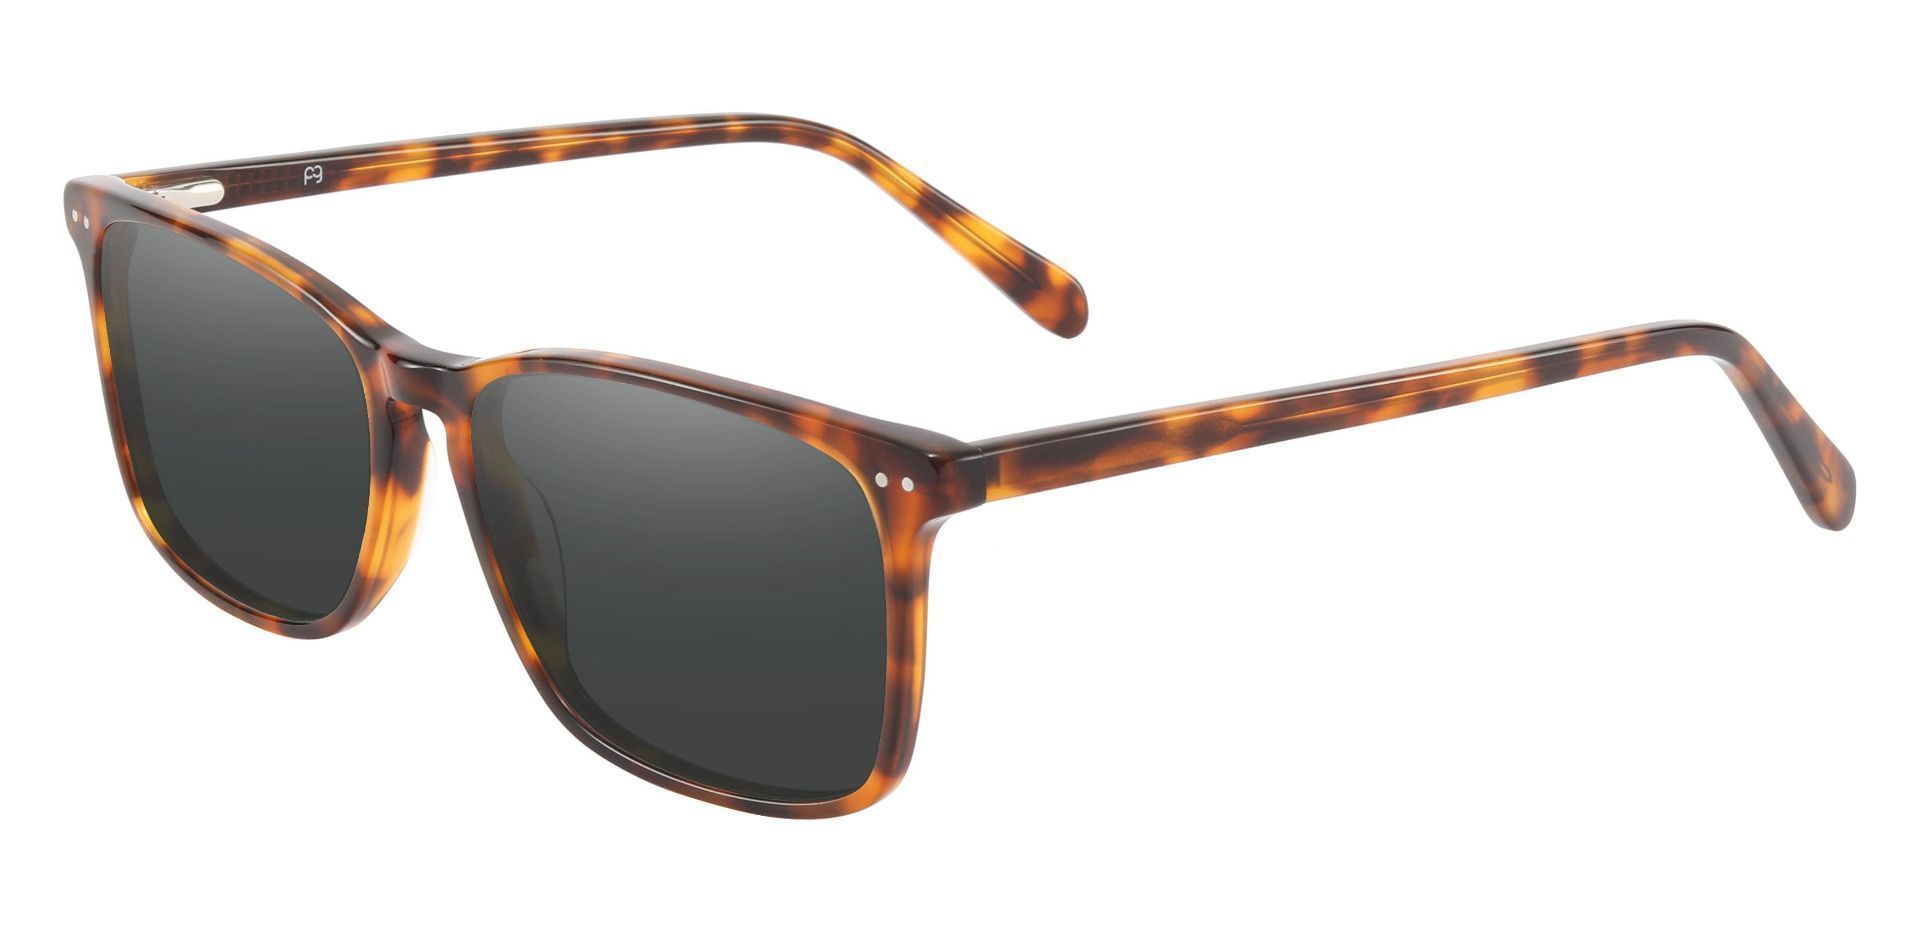 Finney Rectangle Lined Bifocal Sunglasses - Tortoise Frame With Gray Lenses